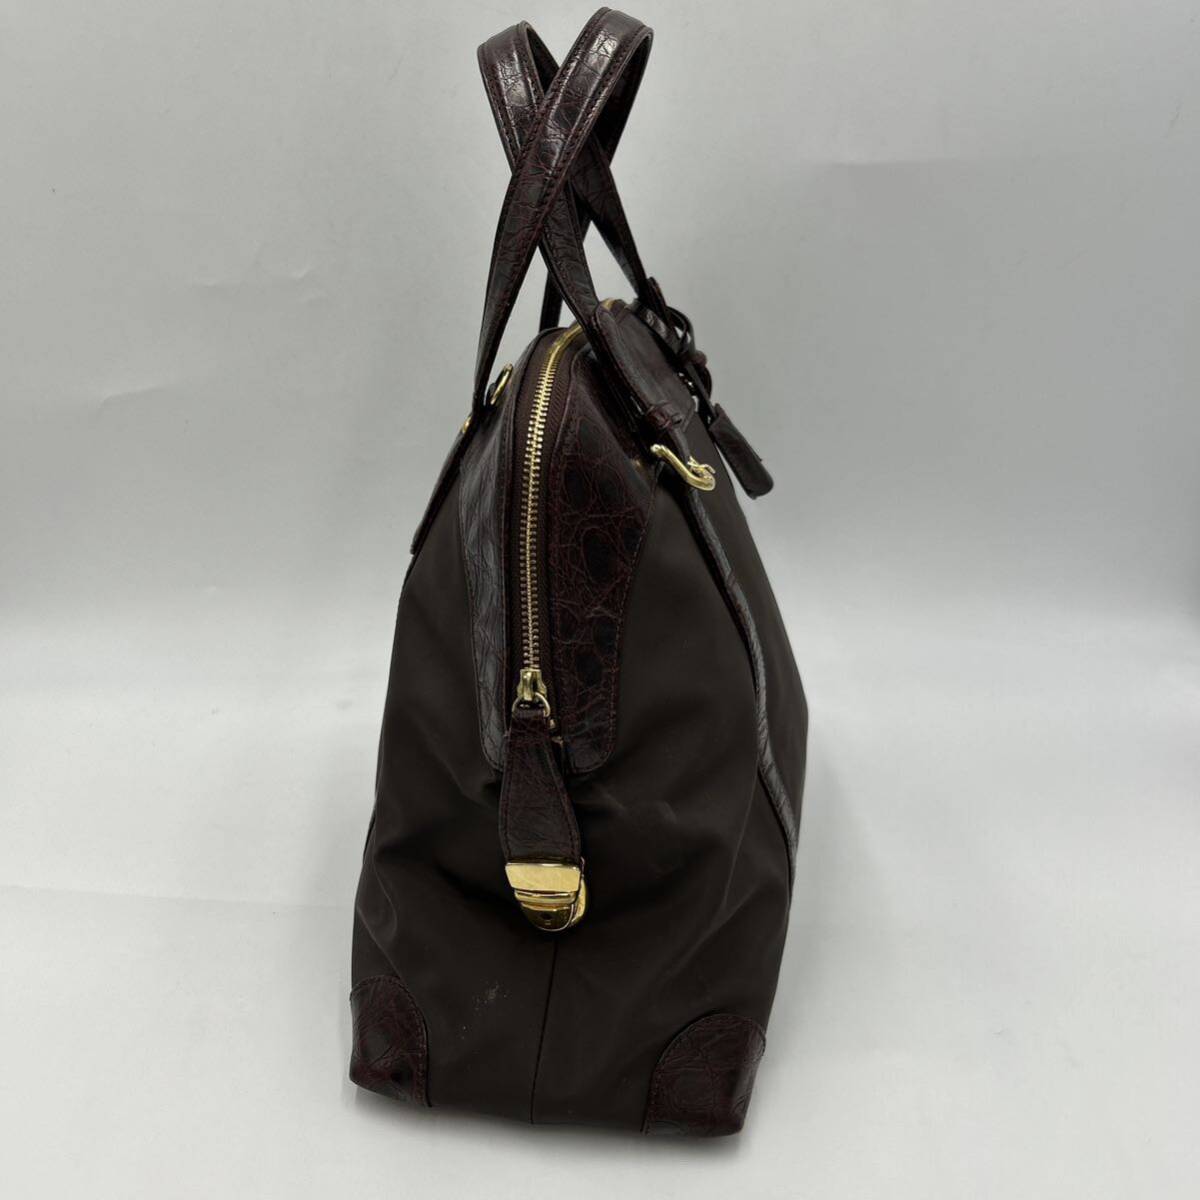 A @ 洗礼されたデザイン '高級感溢れる' LEILIAN レリアン LEATHER 切り替え トートバッグ 手提げ鞄 ハンドバッグ 婦人鞄 レディース 茶系の画像4